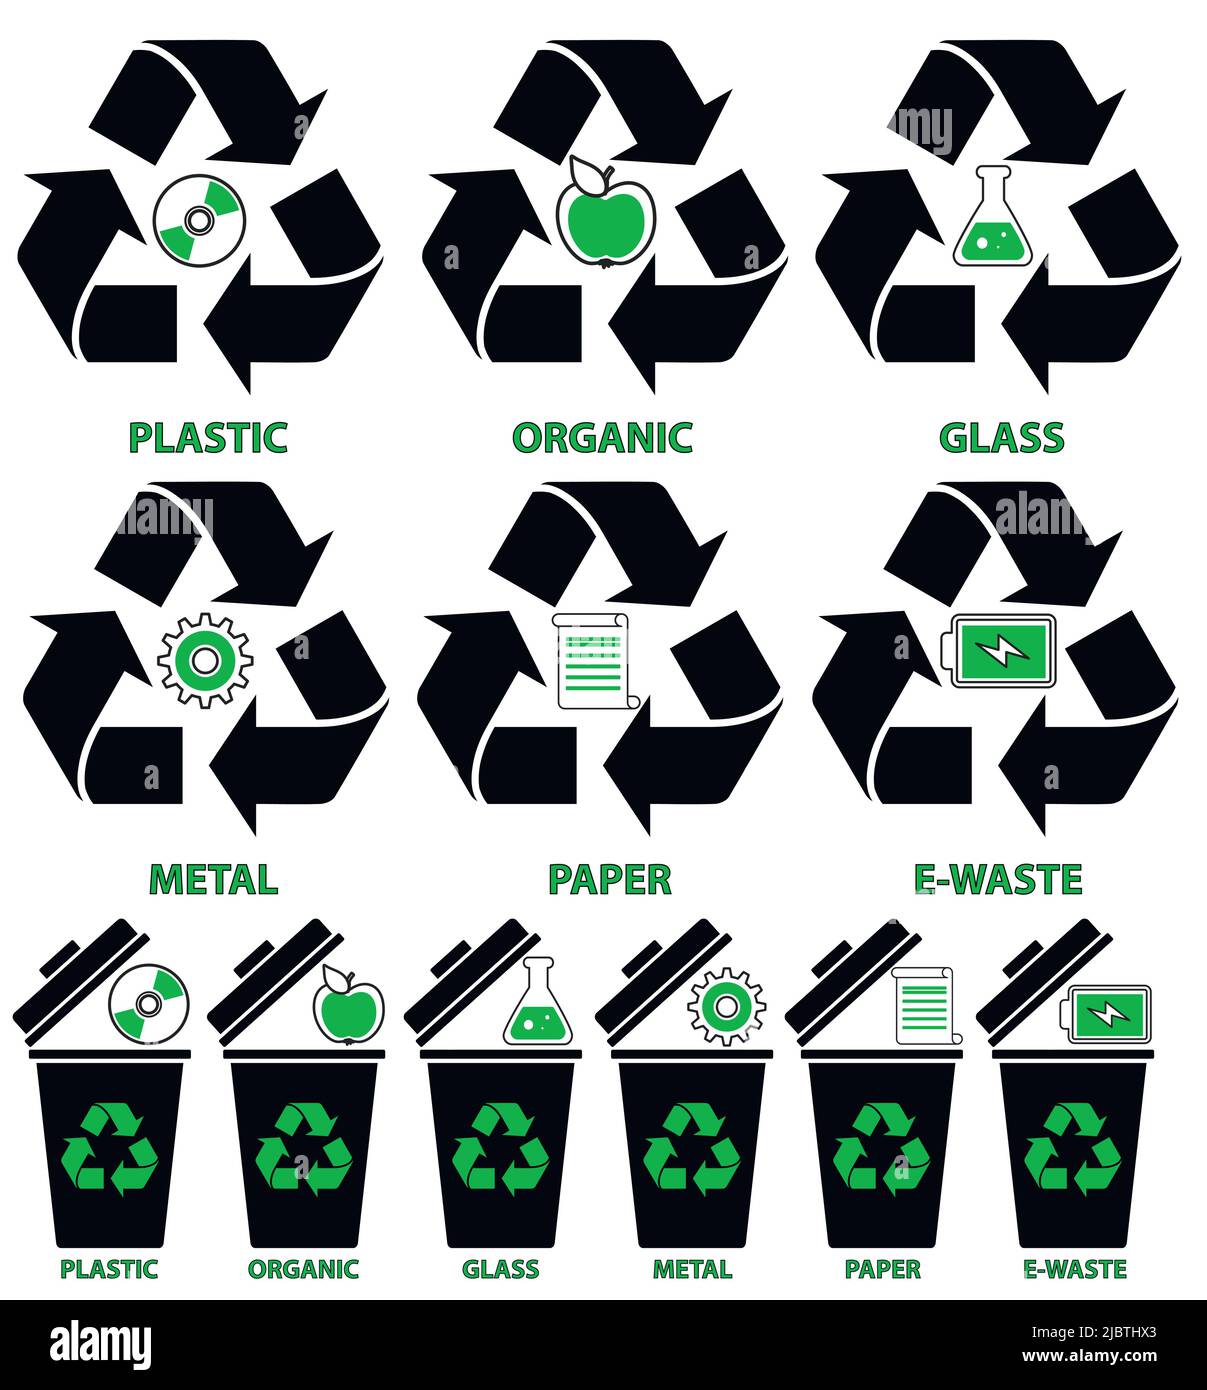 Mülltonnenbilder mit verschiedenen Arten von Müll: Organisch, Kunststoff, Metall, Papier, Glas, E-Waste in flacher Ausführung isoliert auf weißem Hintergrund. Stock Vektor